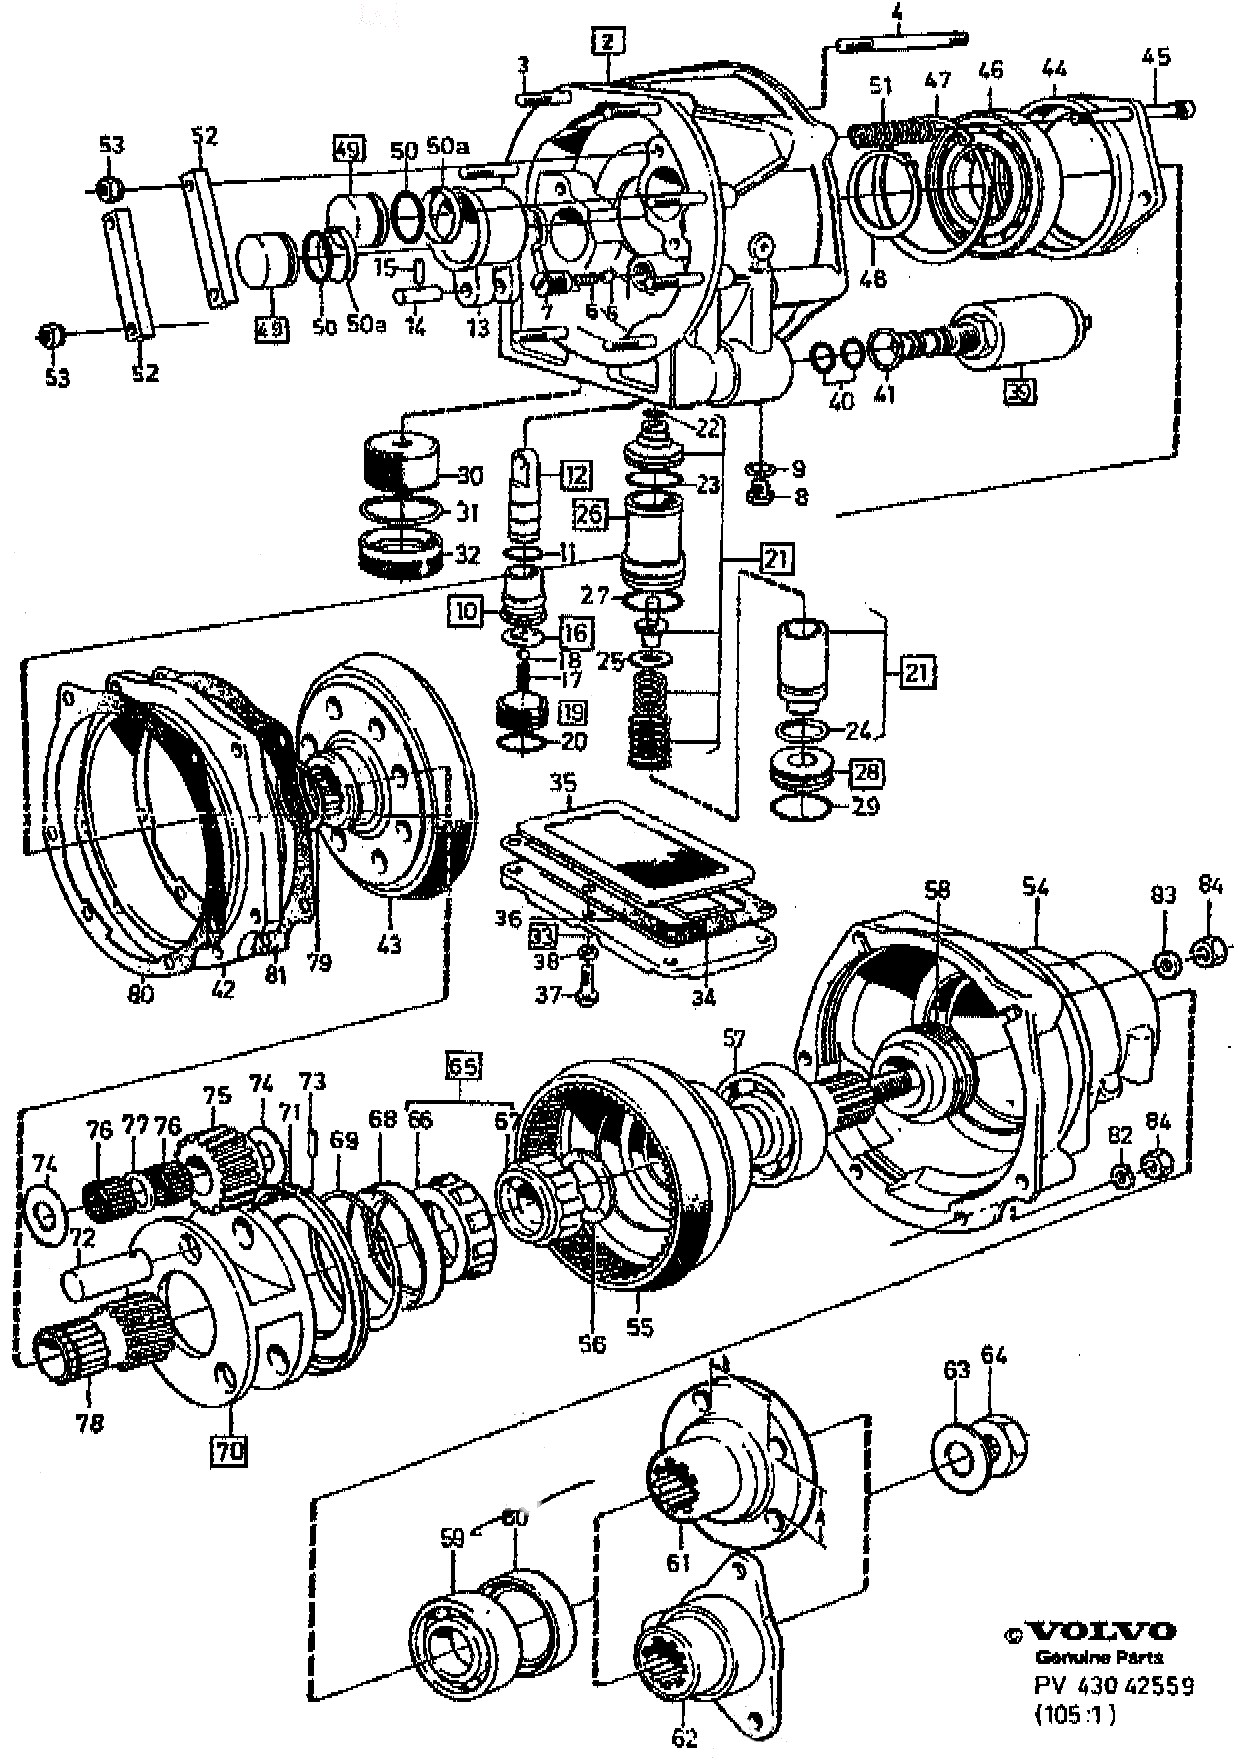 Volvo 850 Engine Diagram Volvo Parts Diagrams Wiring Diagram Dash Of Volvo 850 Engine Diagram